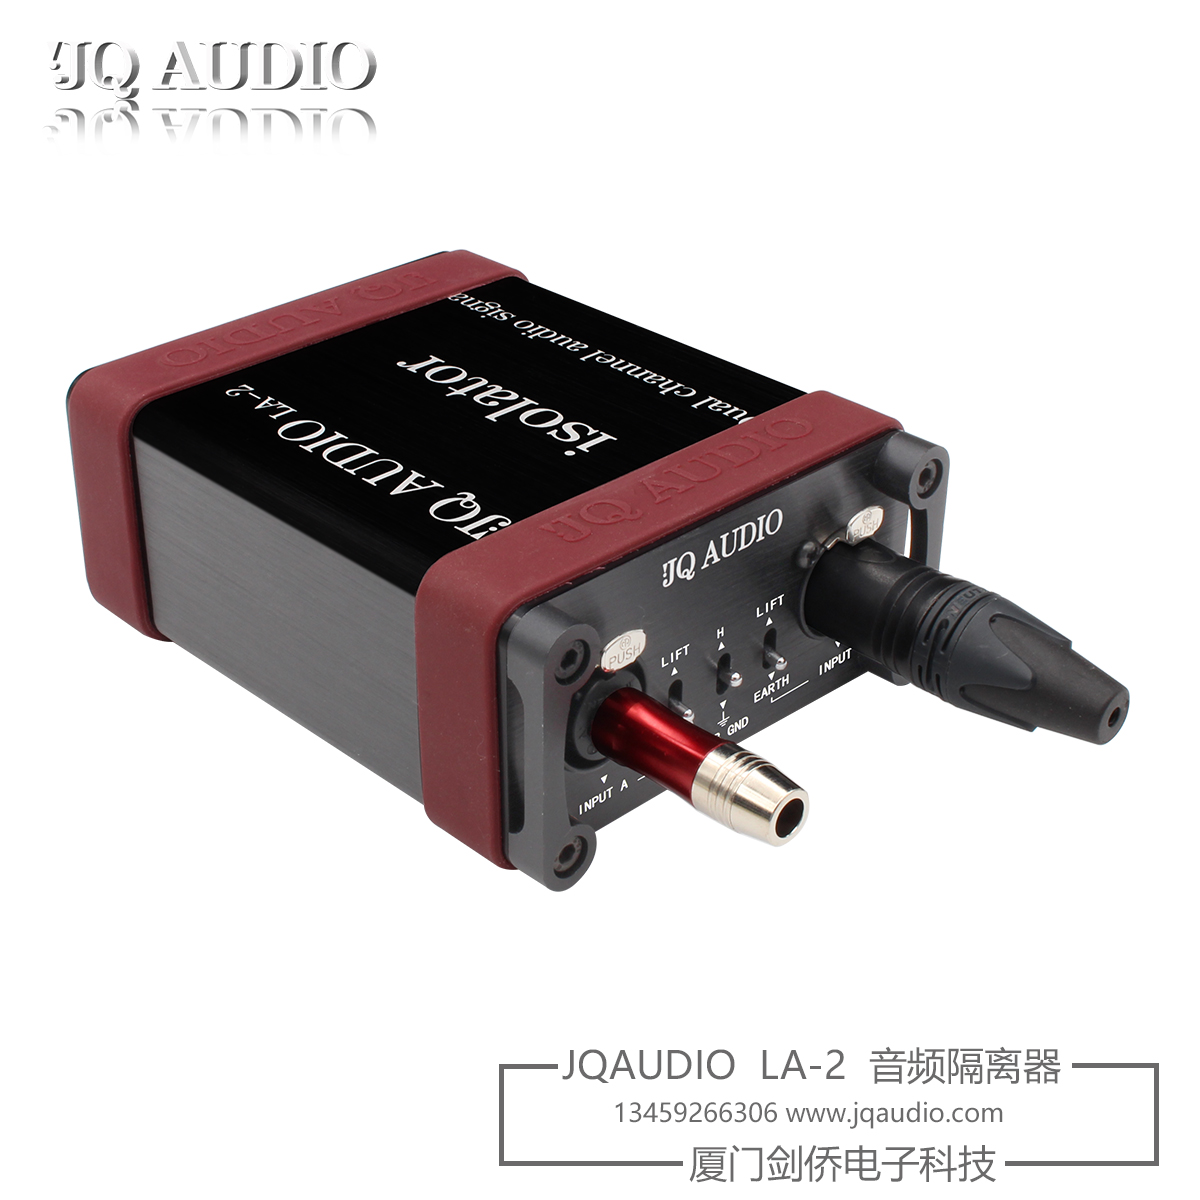 JQ AUDIO LA-2系列剑桥音频隔离器卡侬电流声隔离器隔离变压器-图2